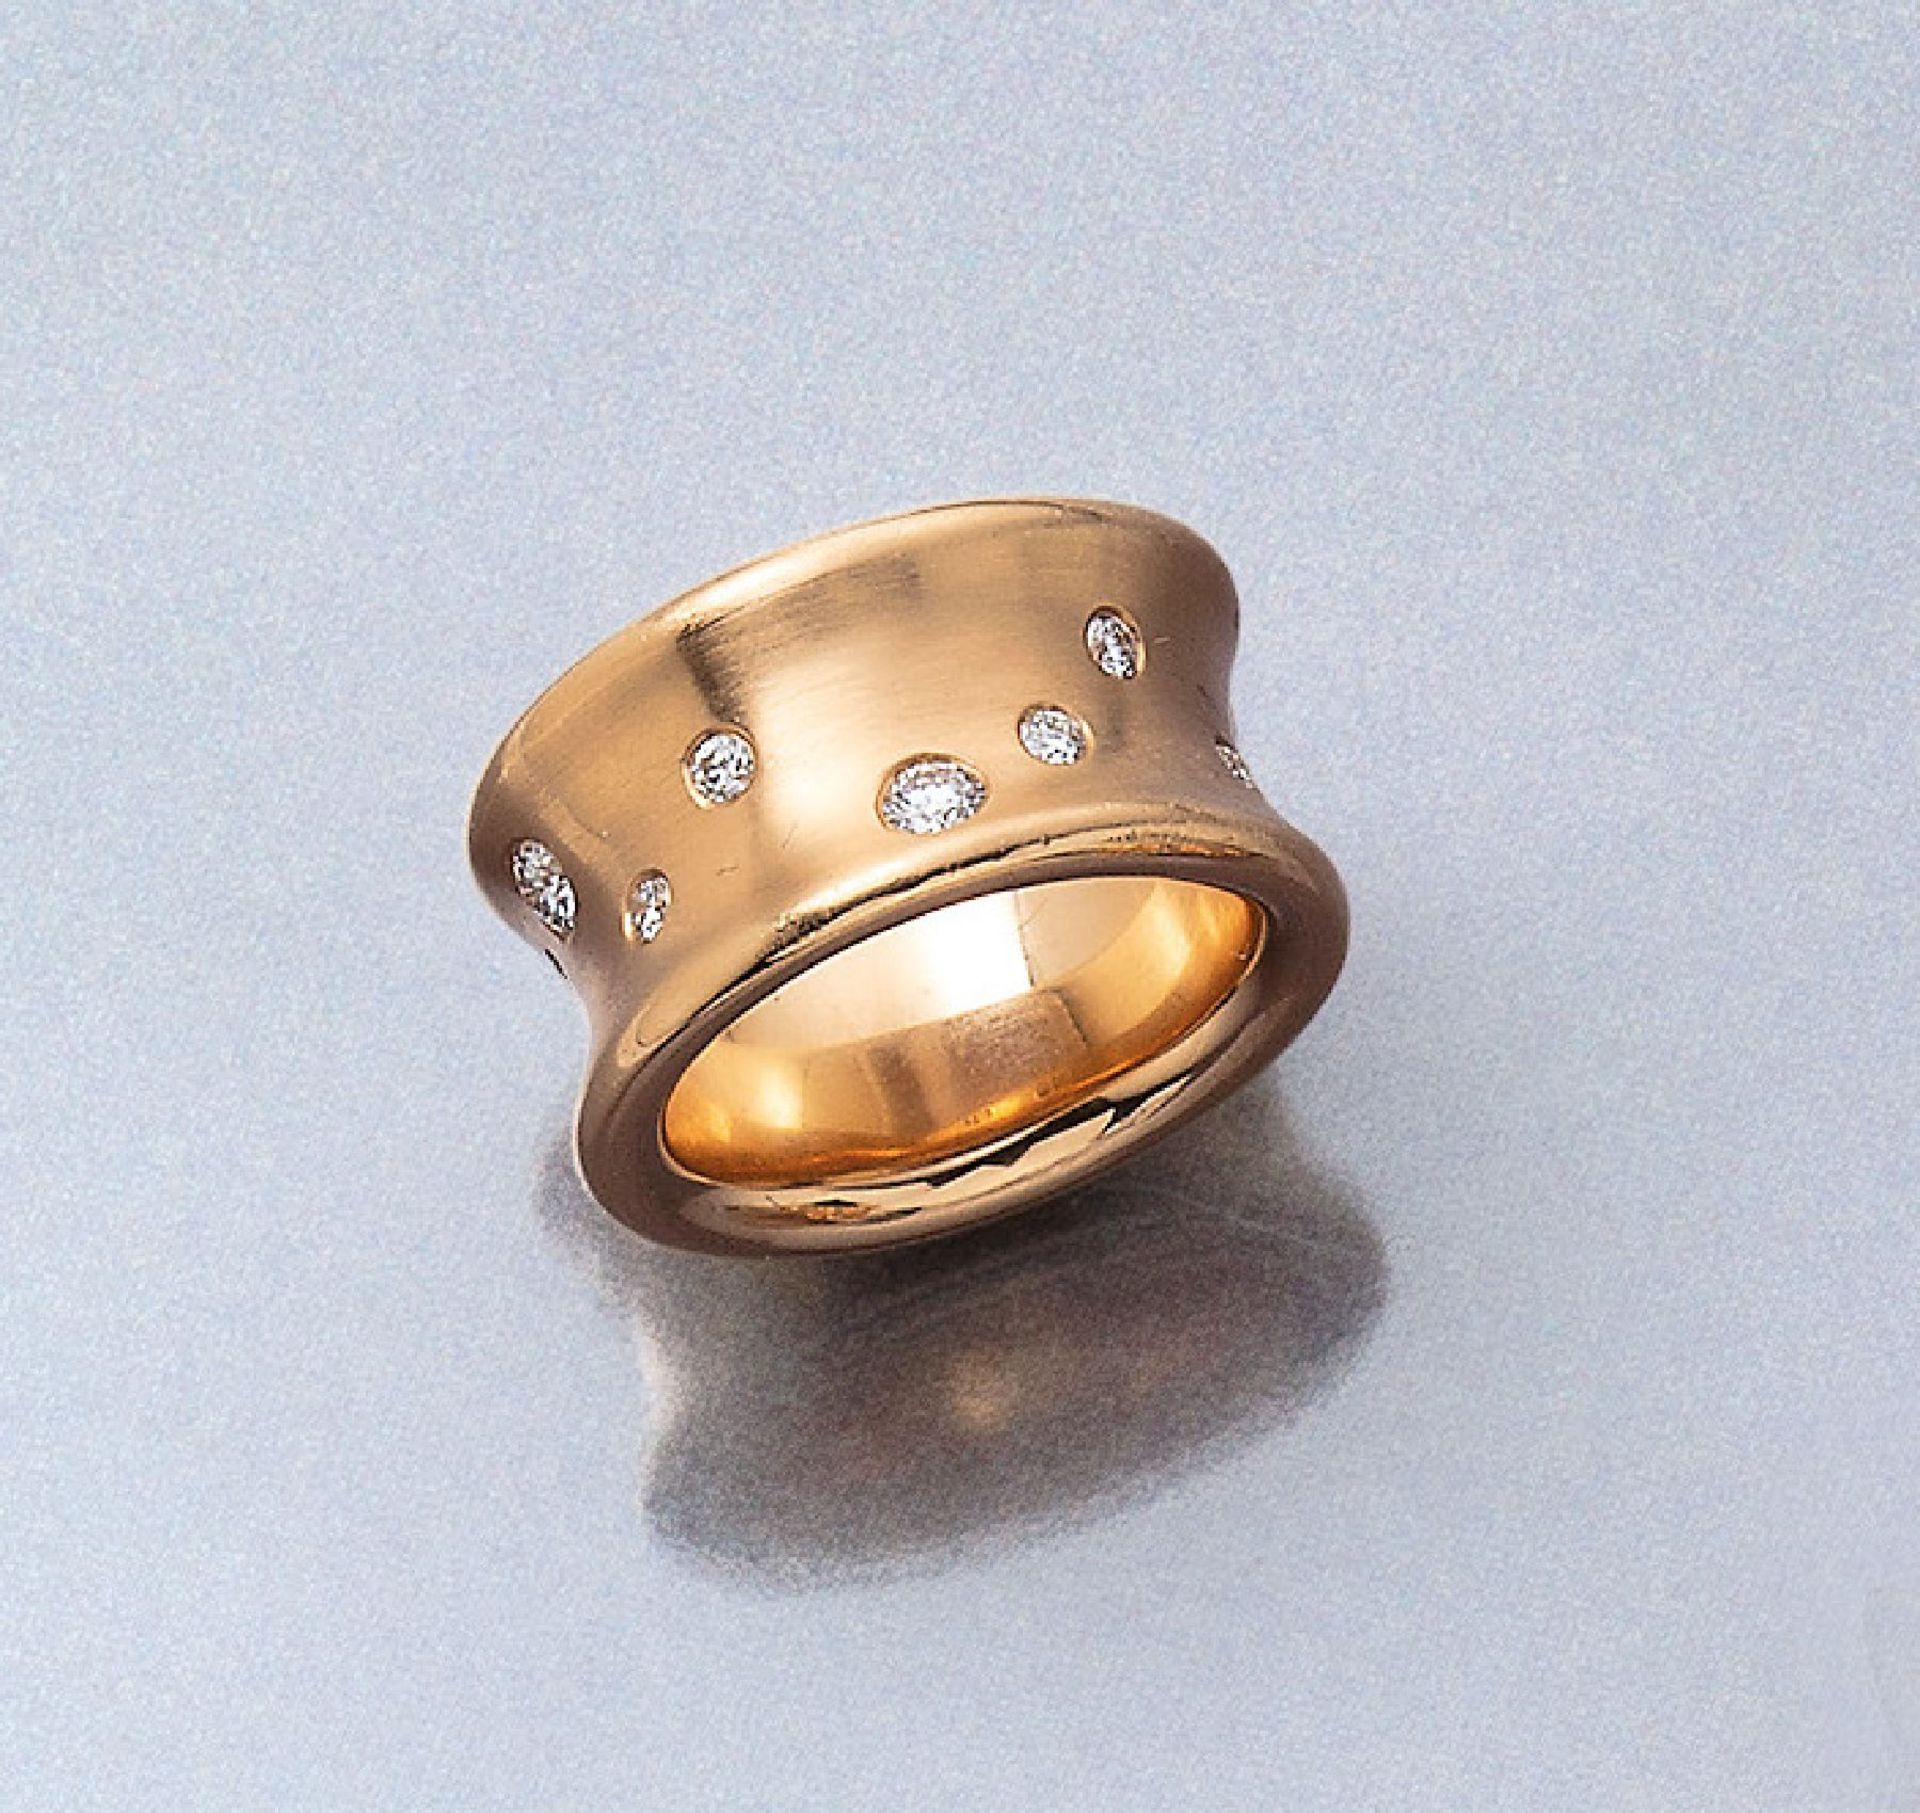 18 kt Gold Ring mit Brillanten, RG 750/000,konkave Schiene matt., bes. mit Brillanten zus. ca. 0.